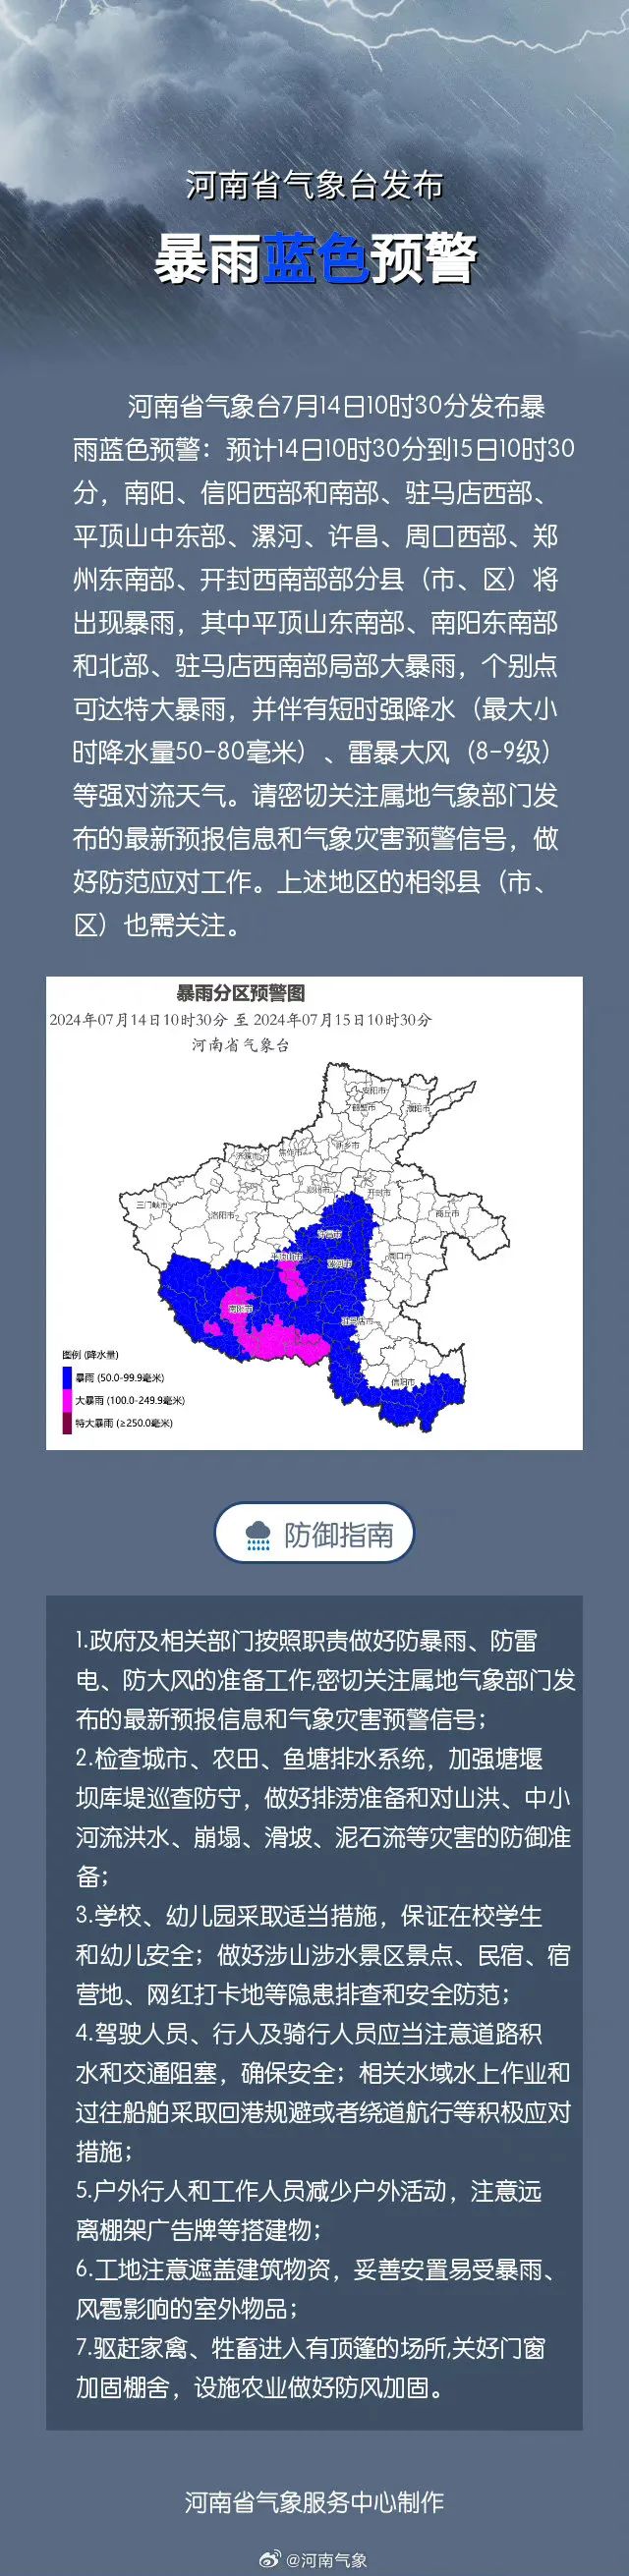 郑州未来天气预报累计雨